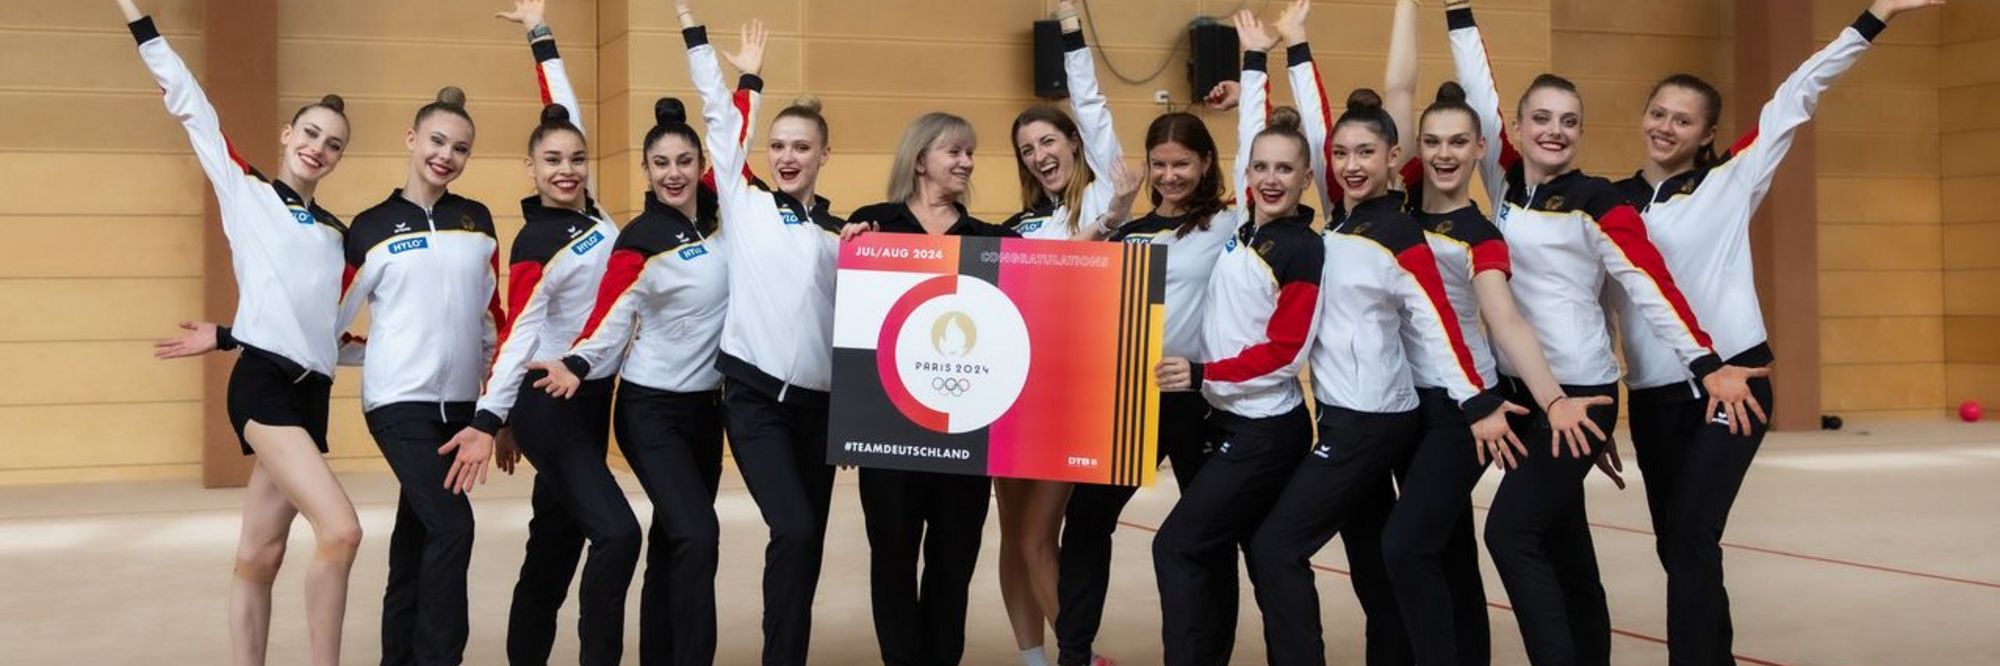 Olymipa 2024: Rhythmische Sportgymnastinnen für Paris